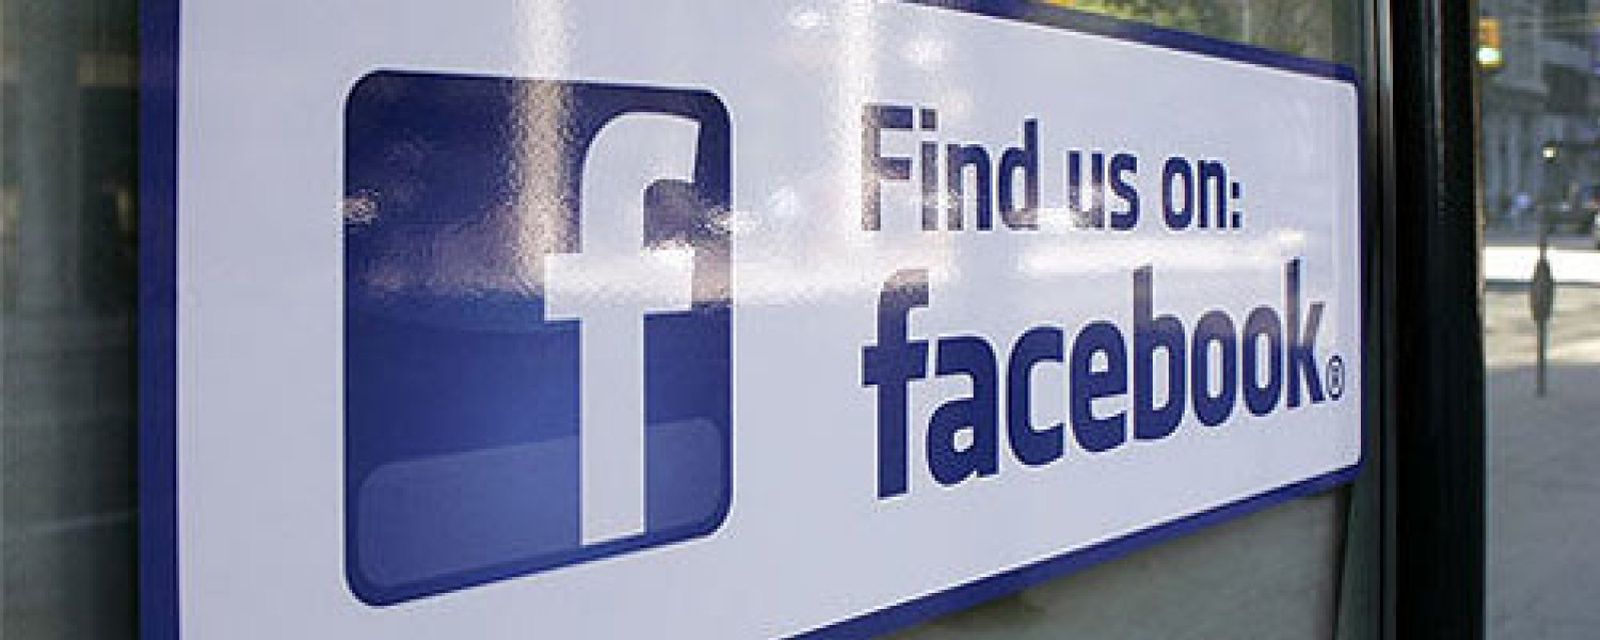 Foto: Facebook insertará más publicidad en tu muro, quieras o no